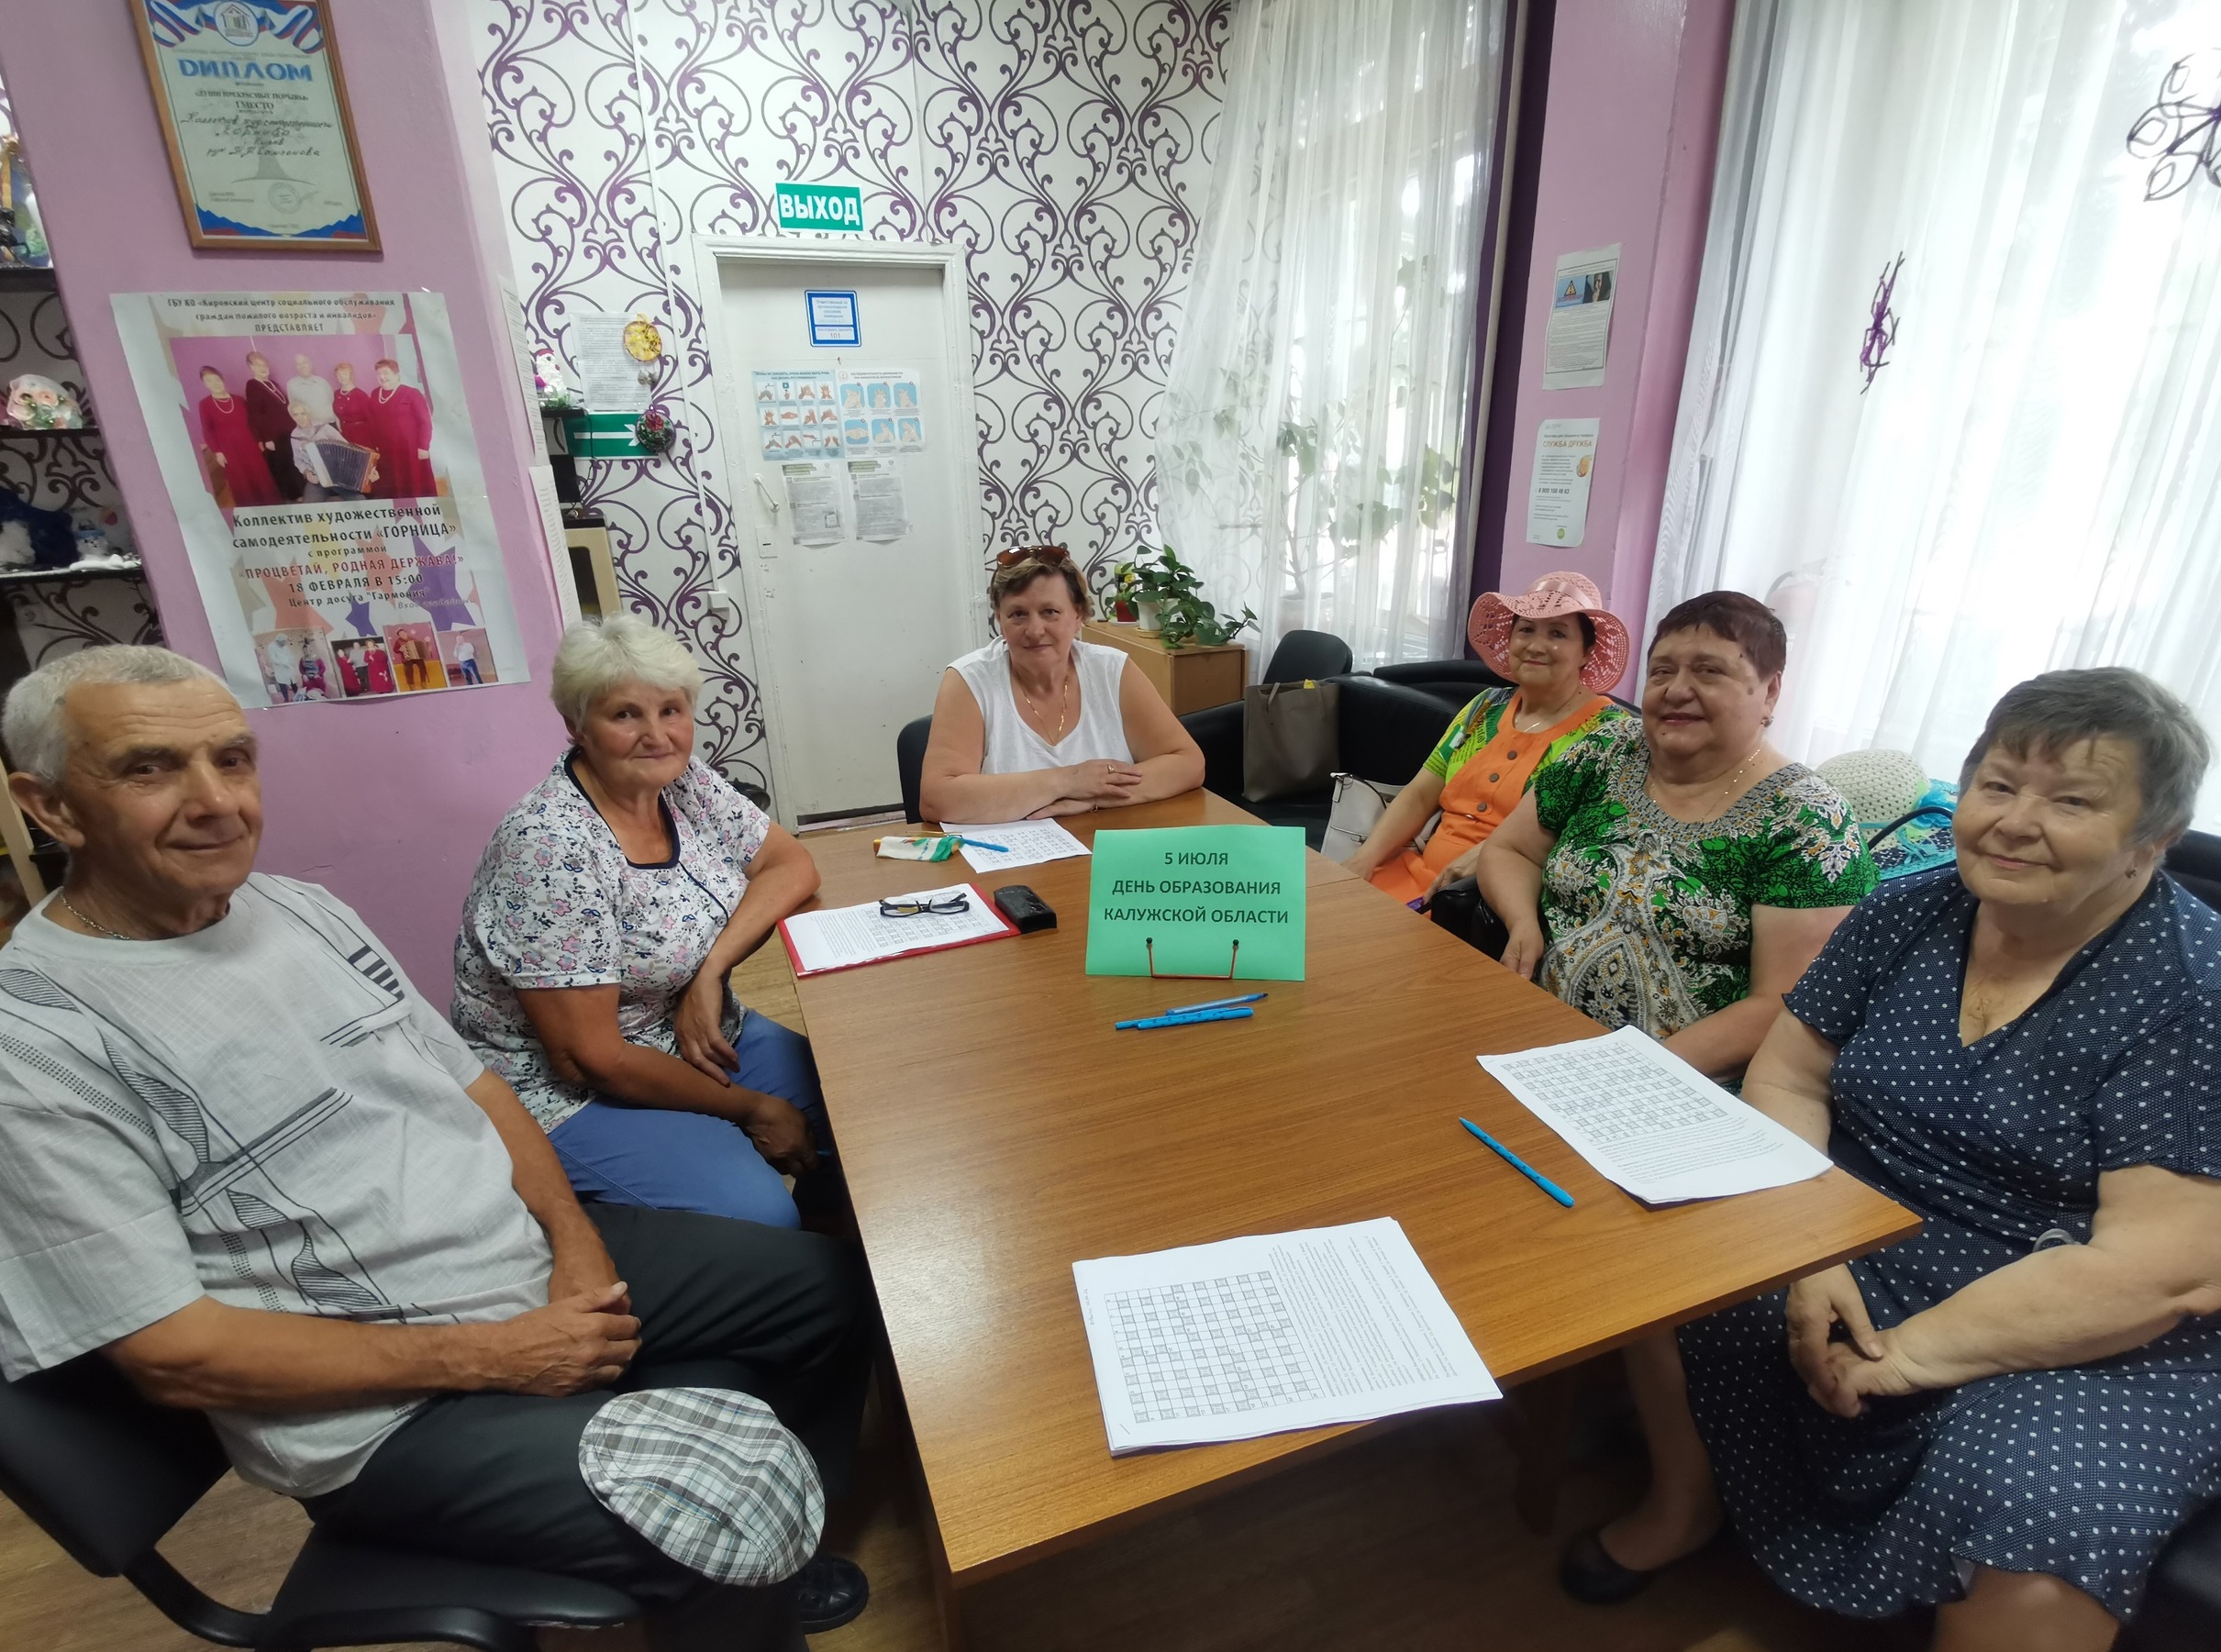 Пенсионерам - о Дне образования Калужской области и Дне её официальных символов